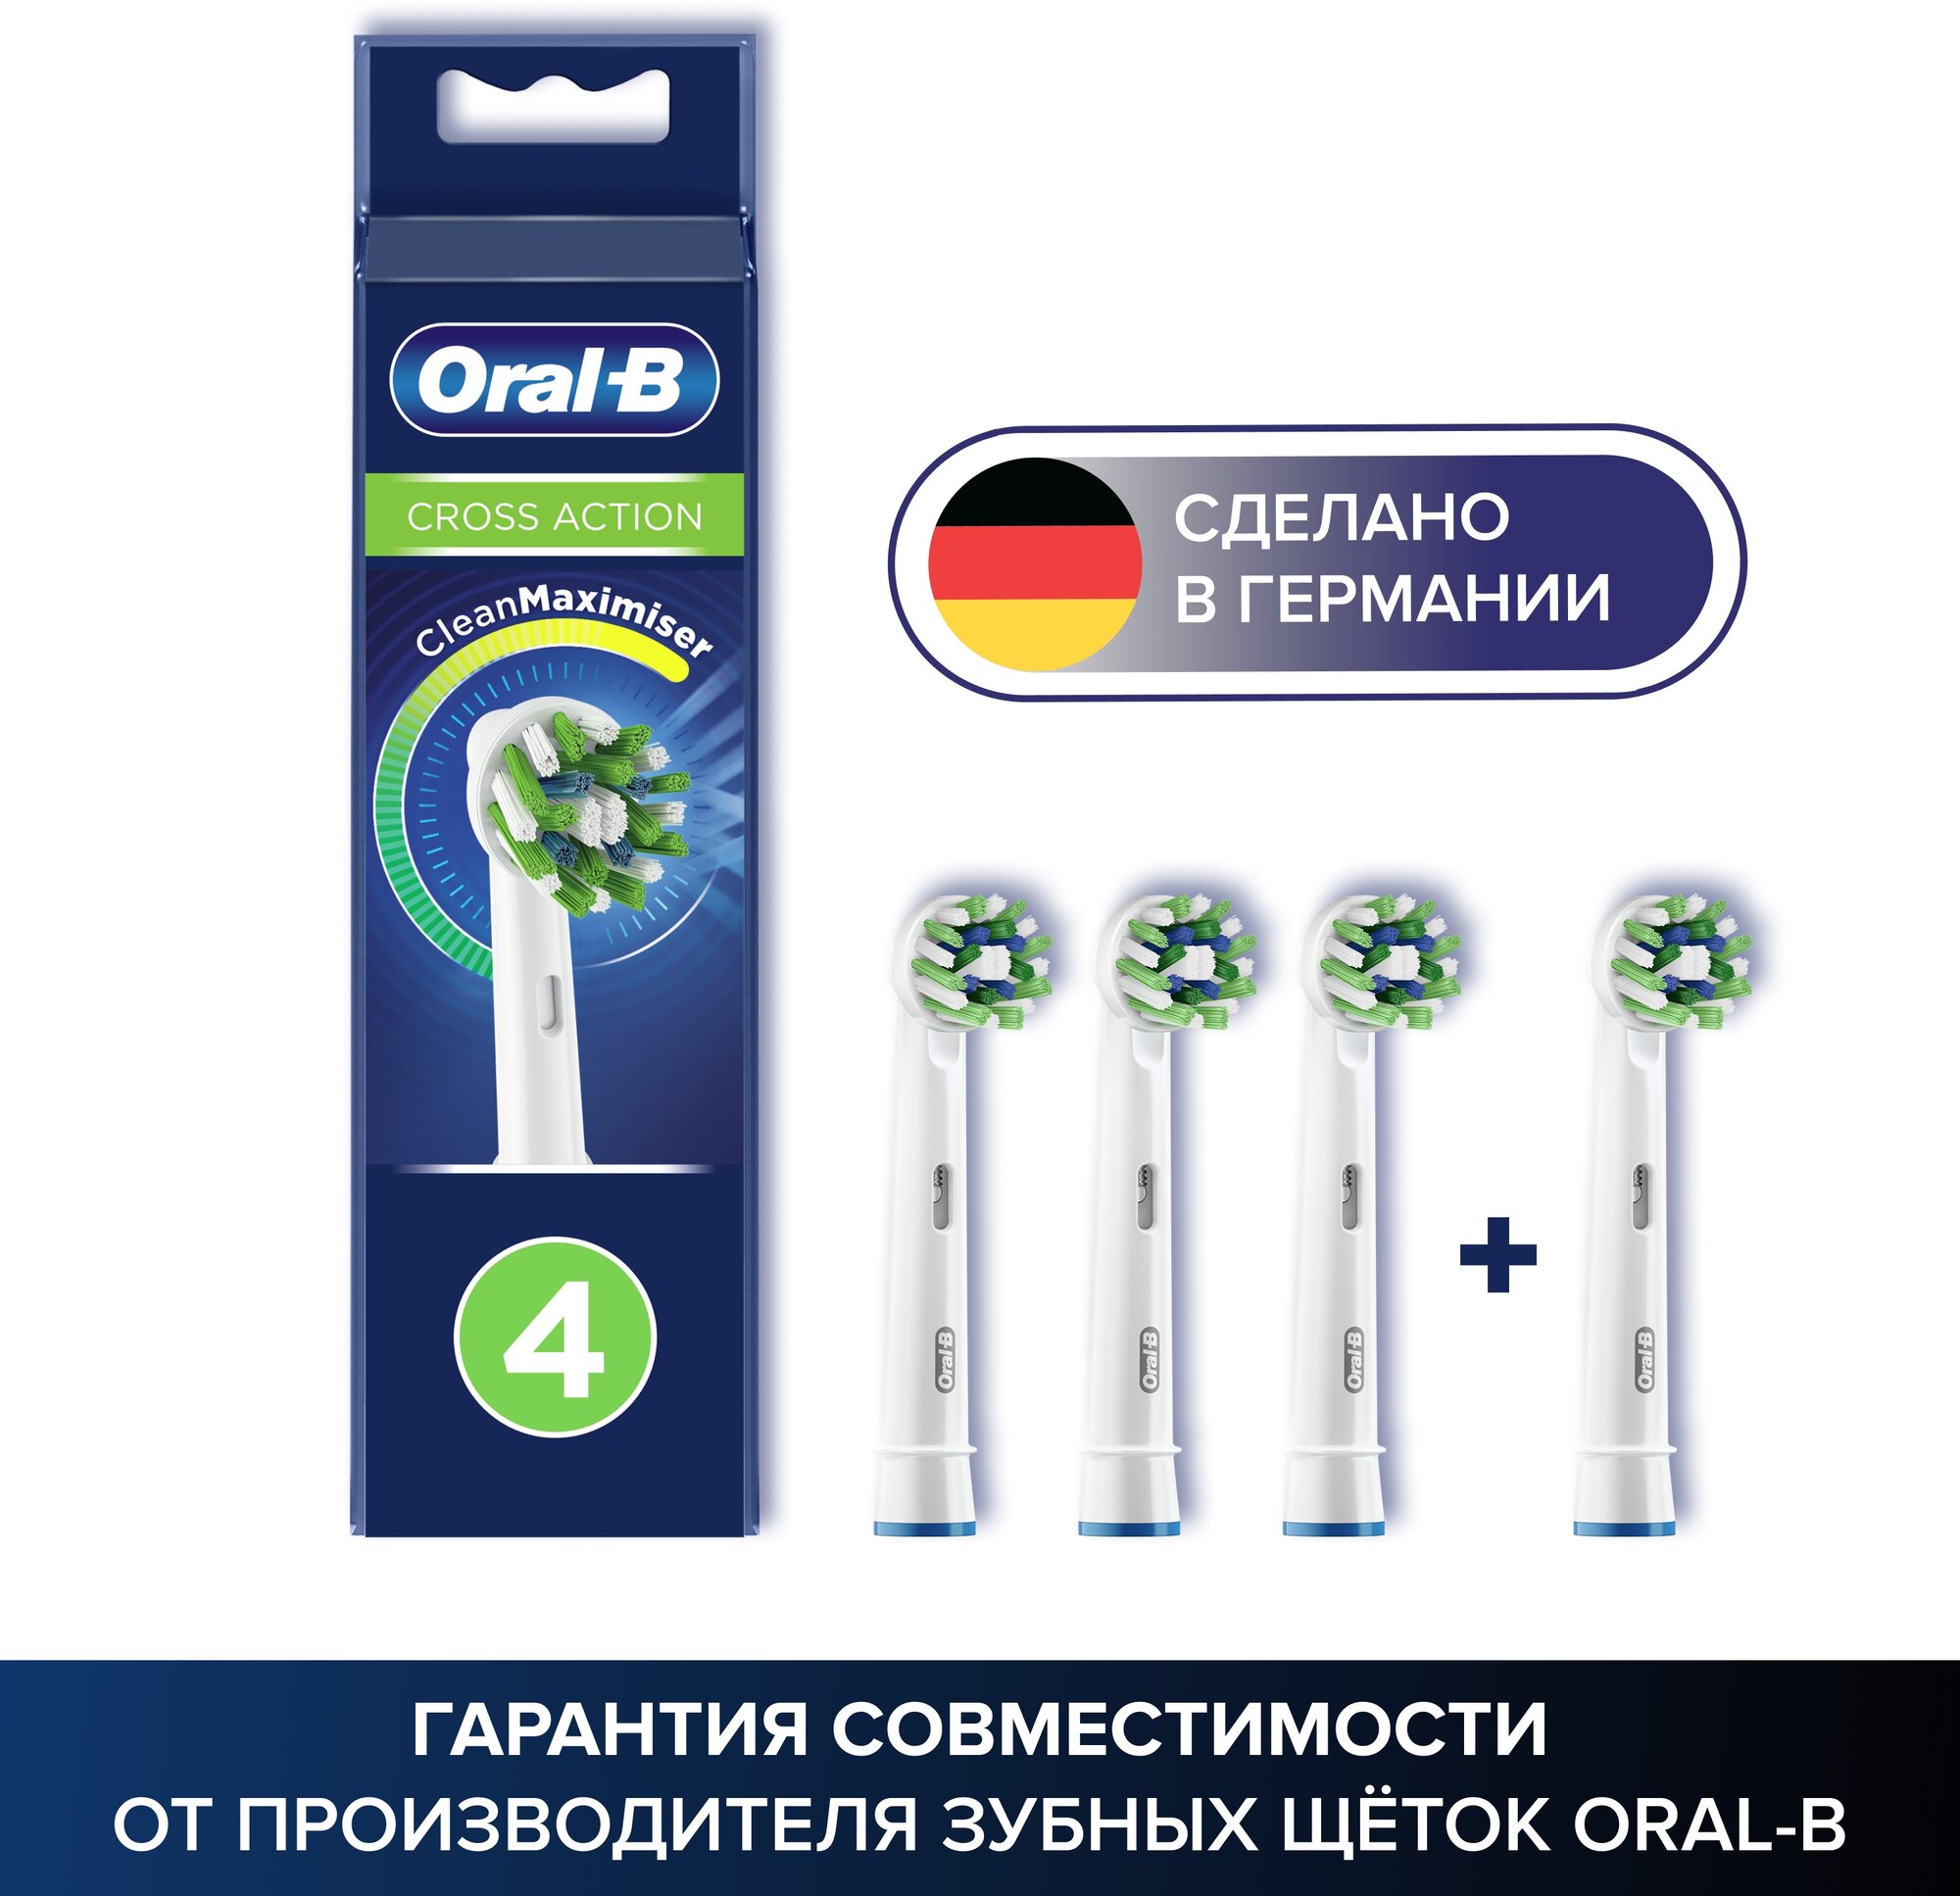 Набор насадок Oral-B Cross Action CleanMaximiser для ирригатора и электрической щетки, белый, 4 шт.